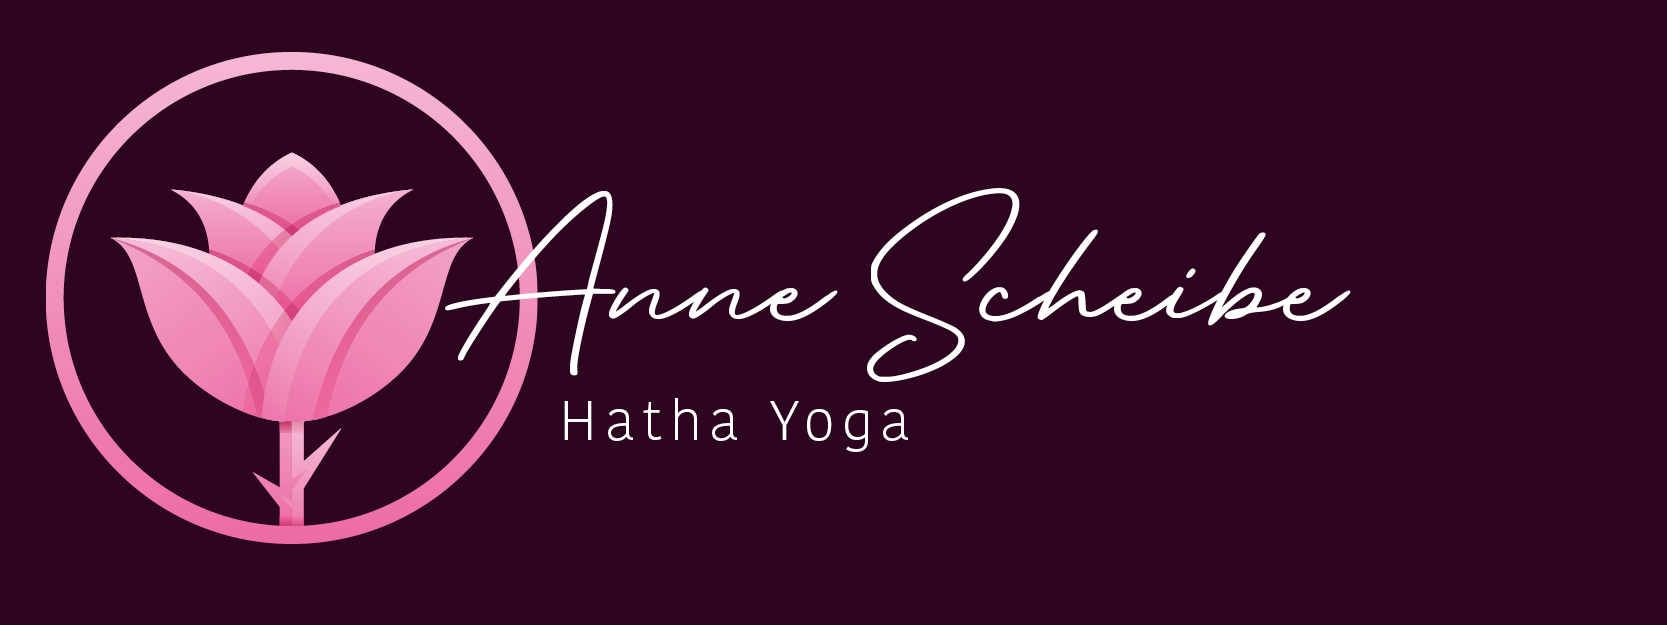 Anne Scheibe Yoga Logo